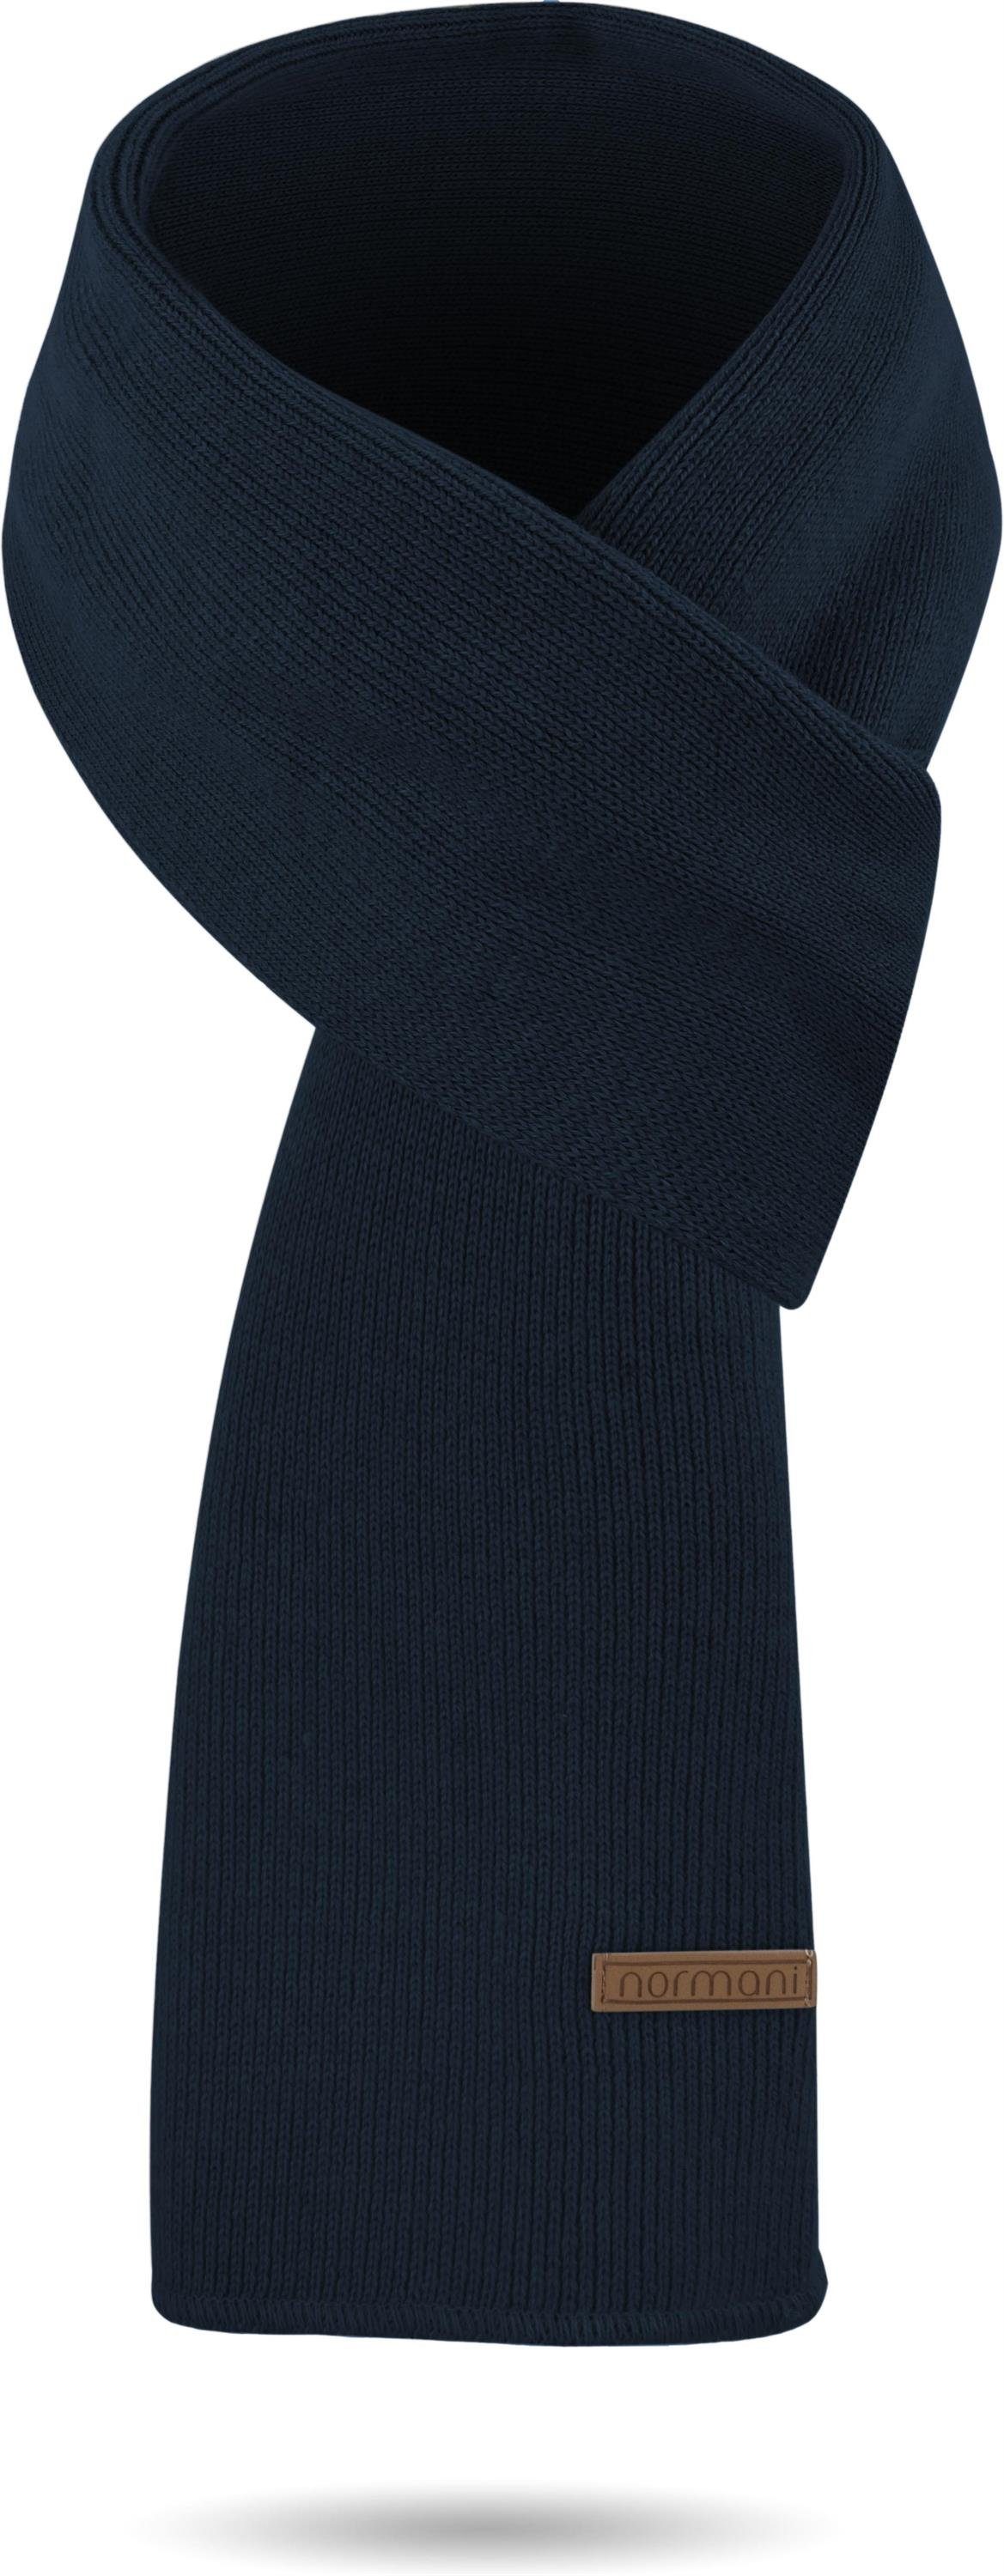 Schal Mütze und glatt normani aus Strickmütze Navy Winterset Merinowolle